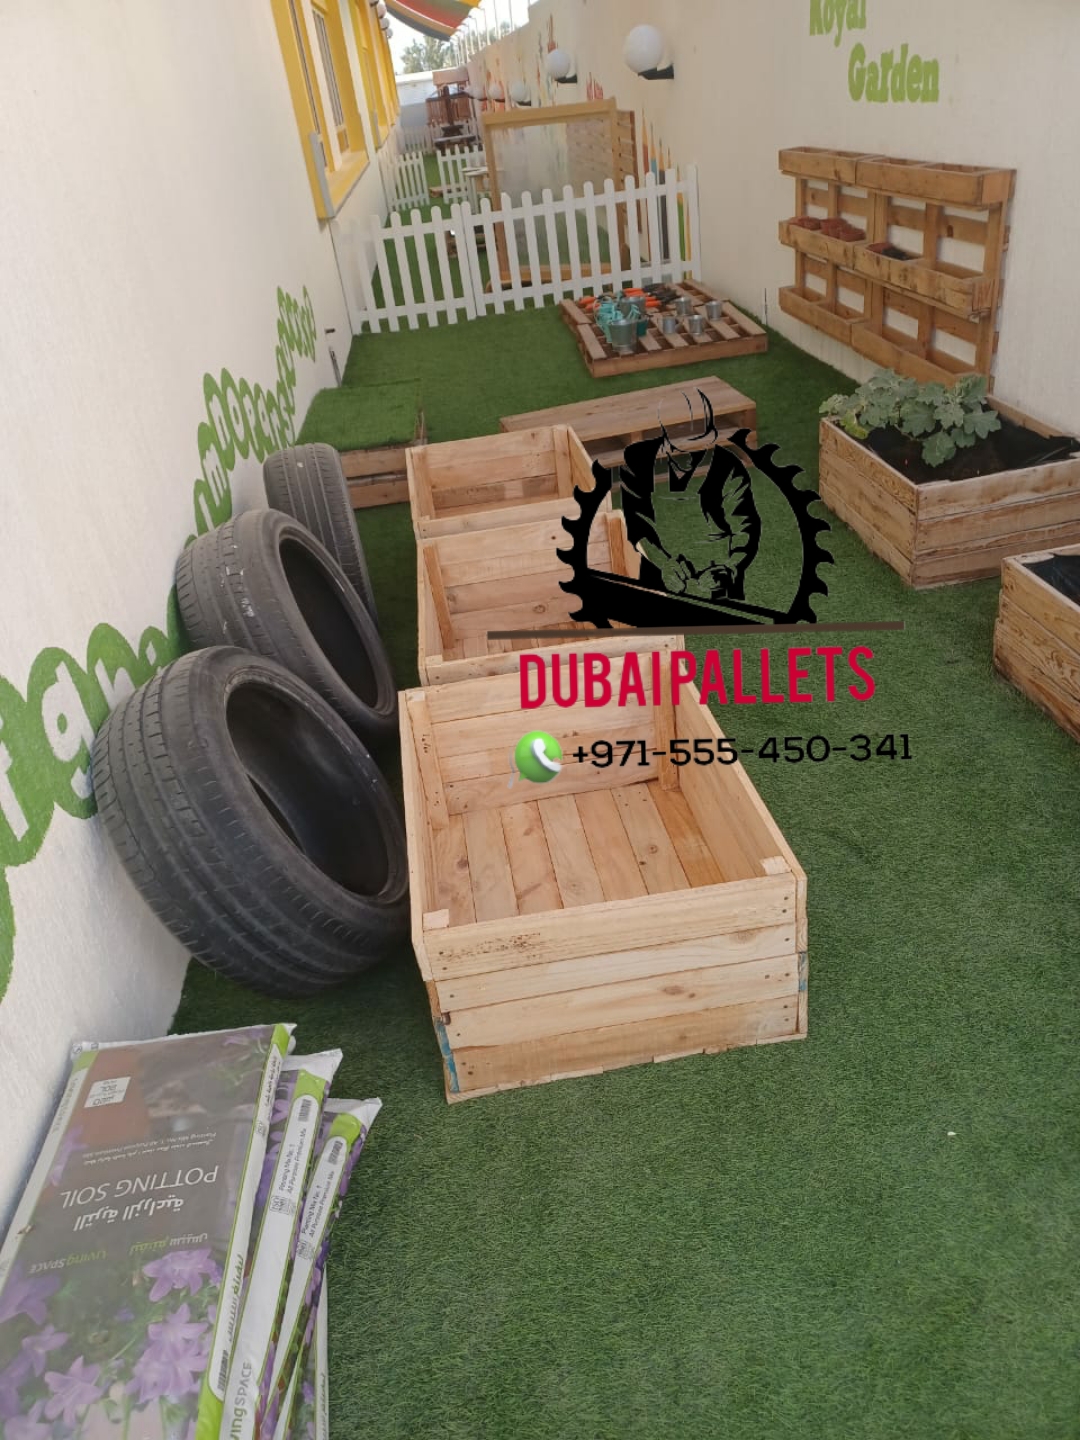 Dubai pallets wooden 0555450341